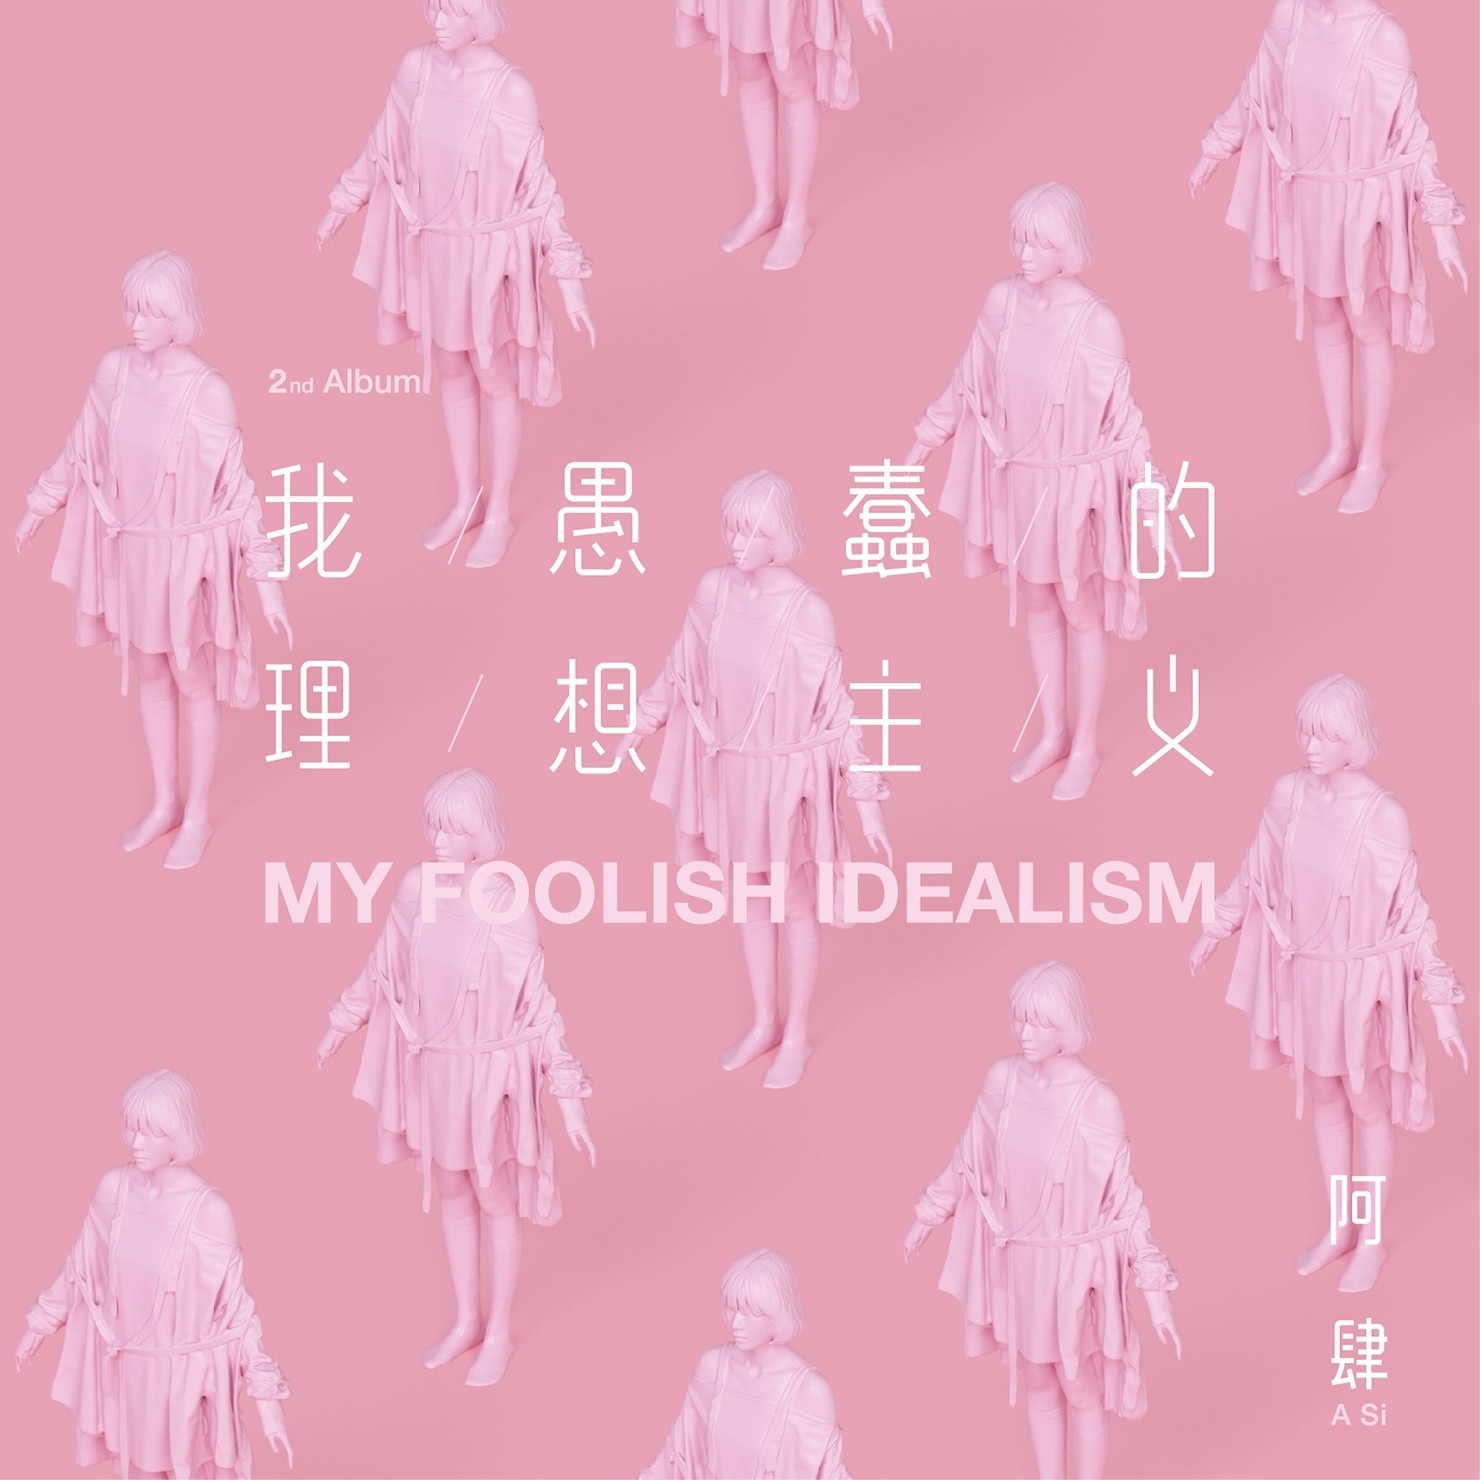 A Si: My Foolish Idealism